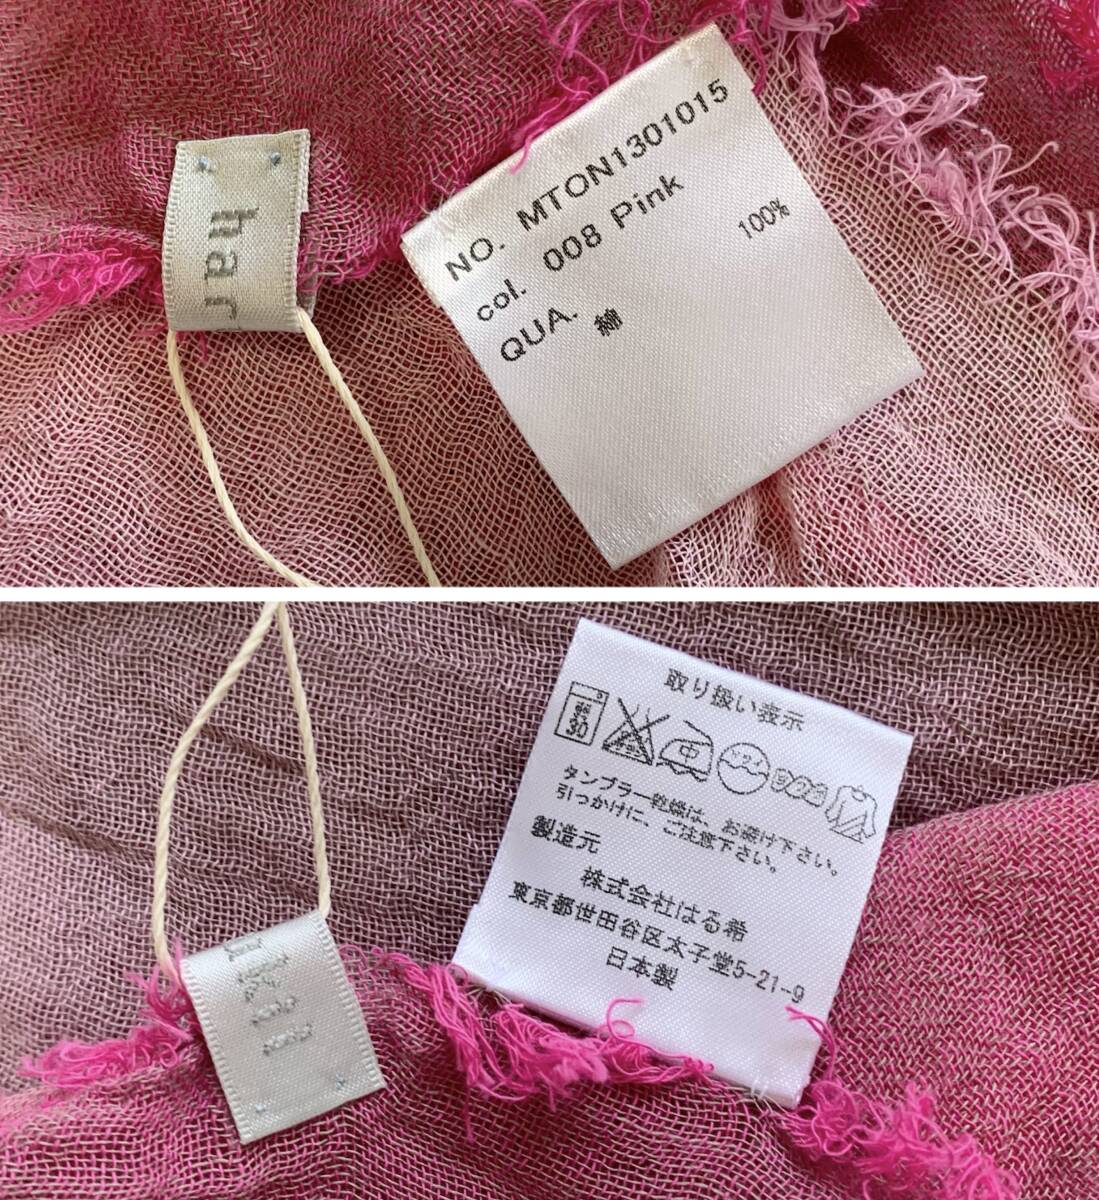 未使用 harukii はる希 ブロックチェック ガーゼ ストール 濃淡ピンク 4色 日本製 綿100% 75cm×130cm Sサイズ 送料無料